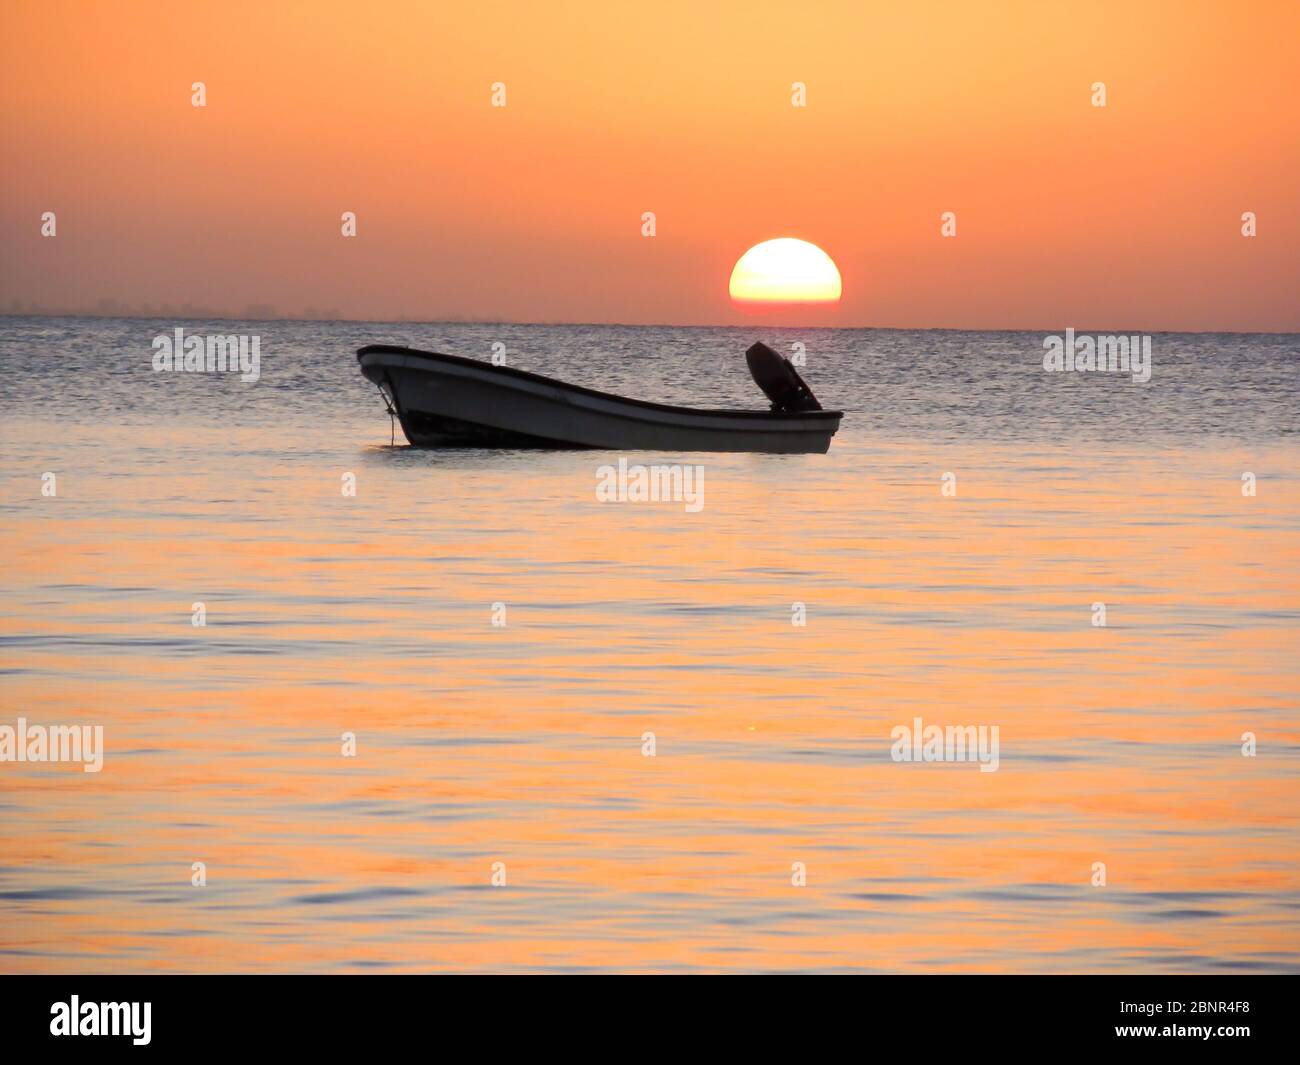 Silhouette eines Motorbootes in der ruhigen geschützten Wasser Maputo Bay, KaNyaka Island, Mosambik, bei Sonnenuntergang Stockfoto